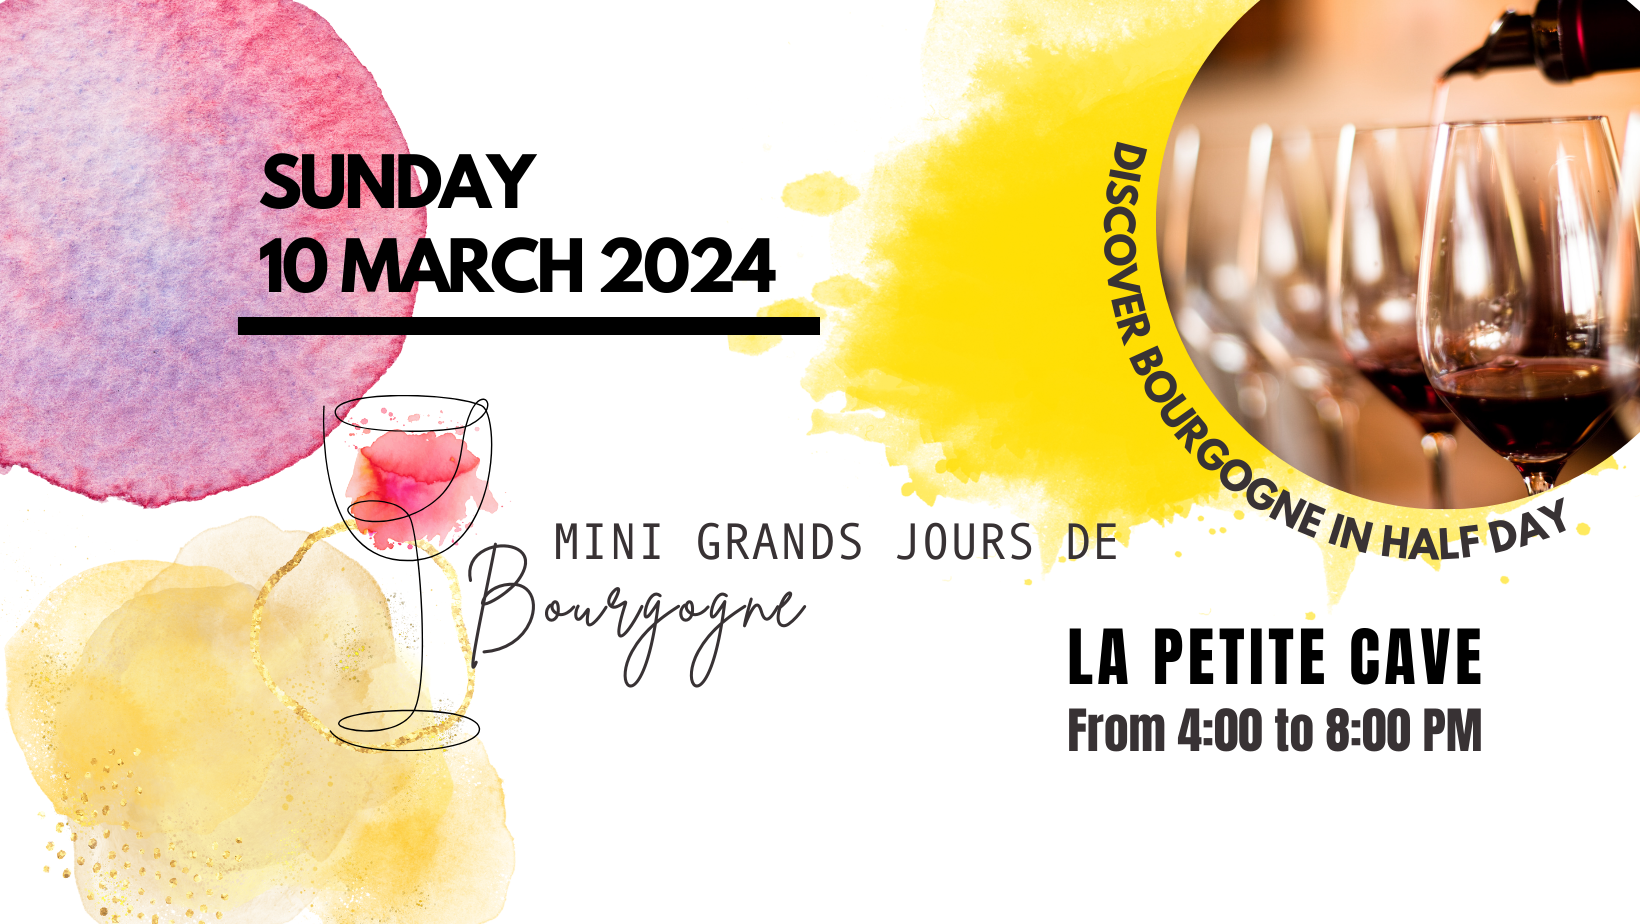 Mini Grands Jours de Bourgogne 10 March